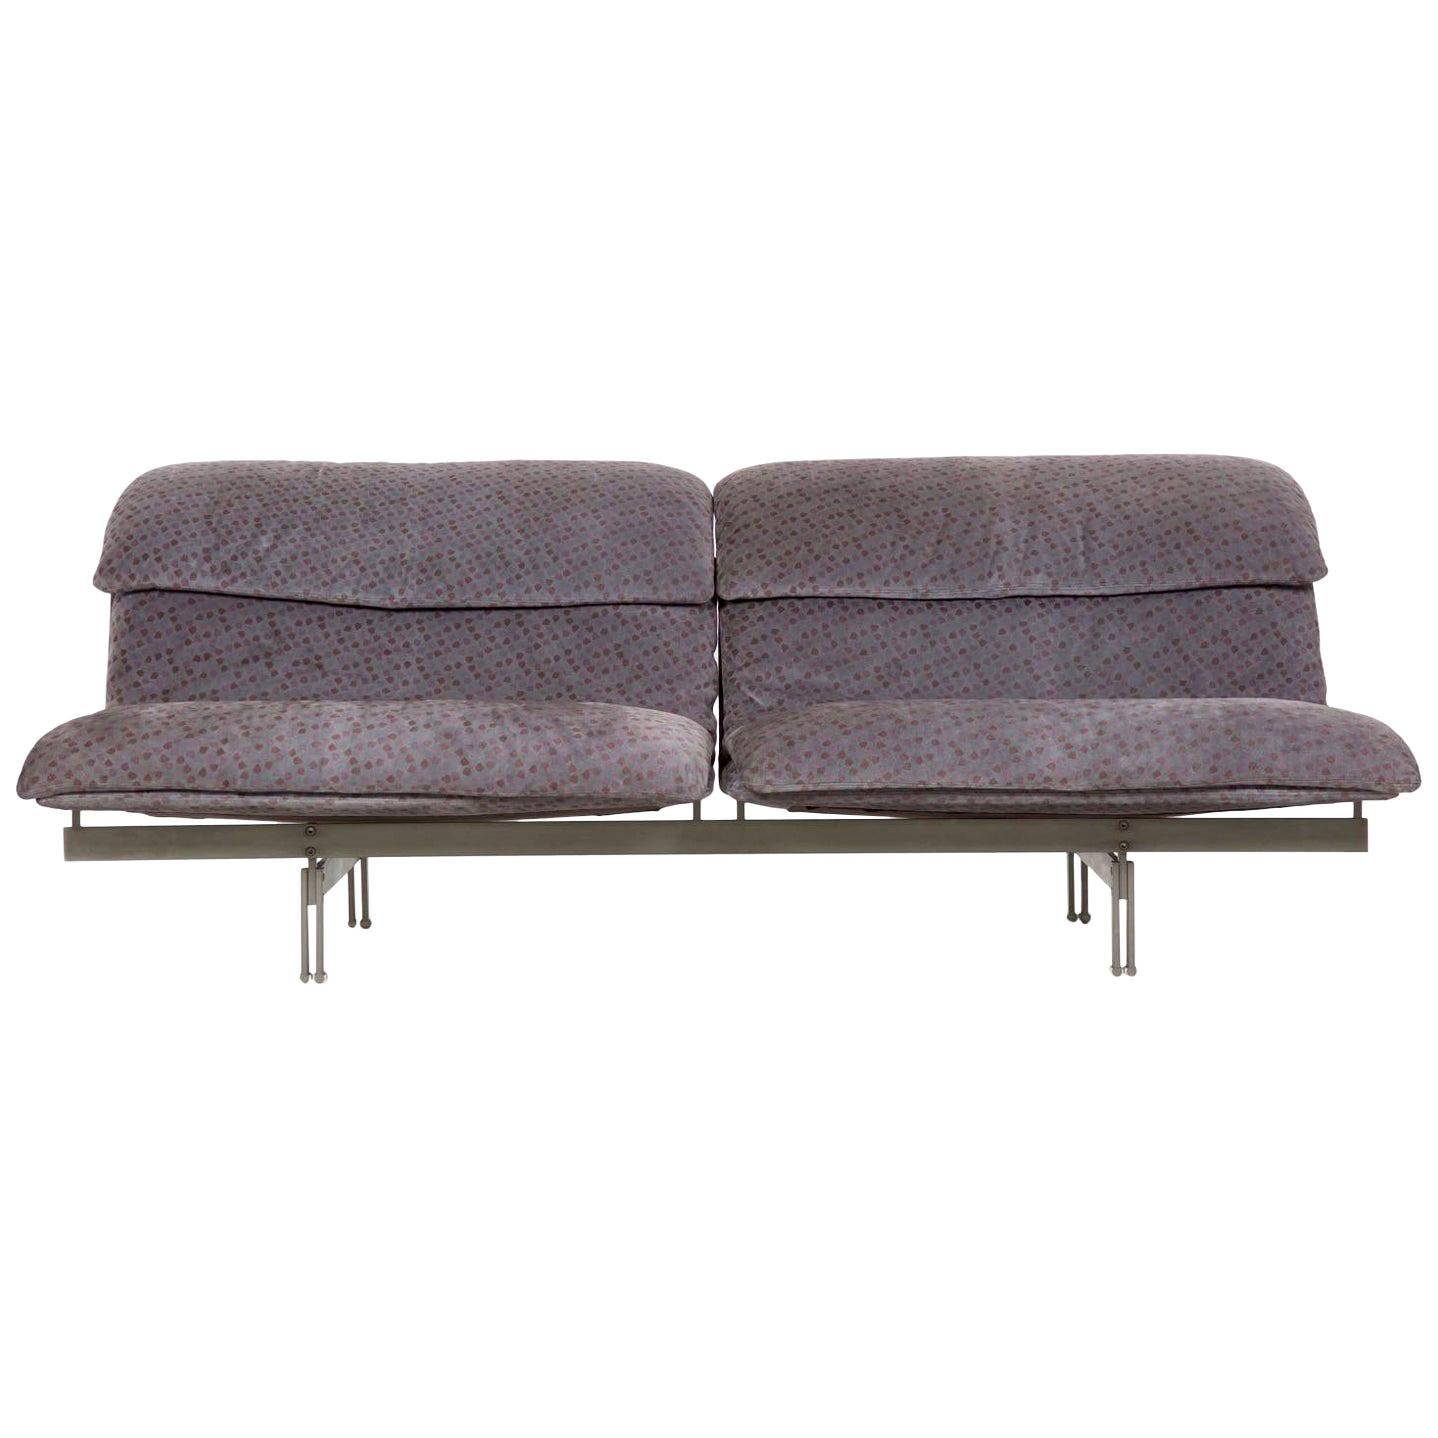 Modern Italian Two-Seat Sofa "Wave" by Giovanni Offredi for Saporiti circa 1970s